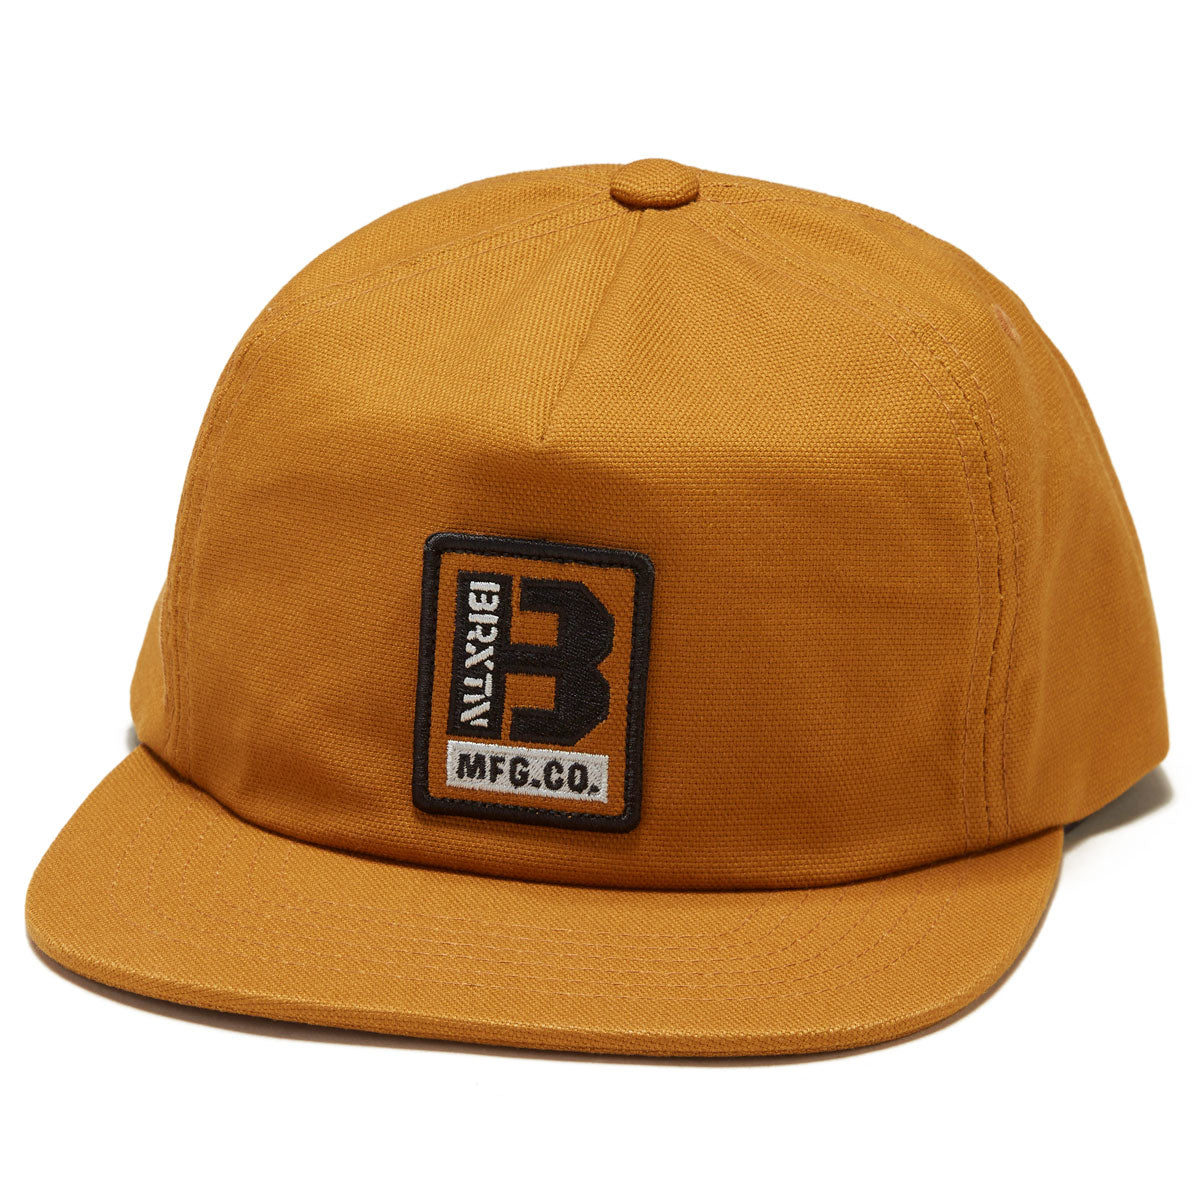 Brixton Builders Mp Adjustable Hat - Golden Brown image 1